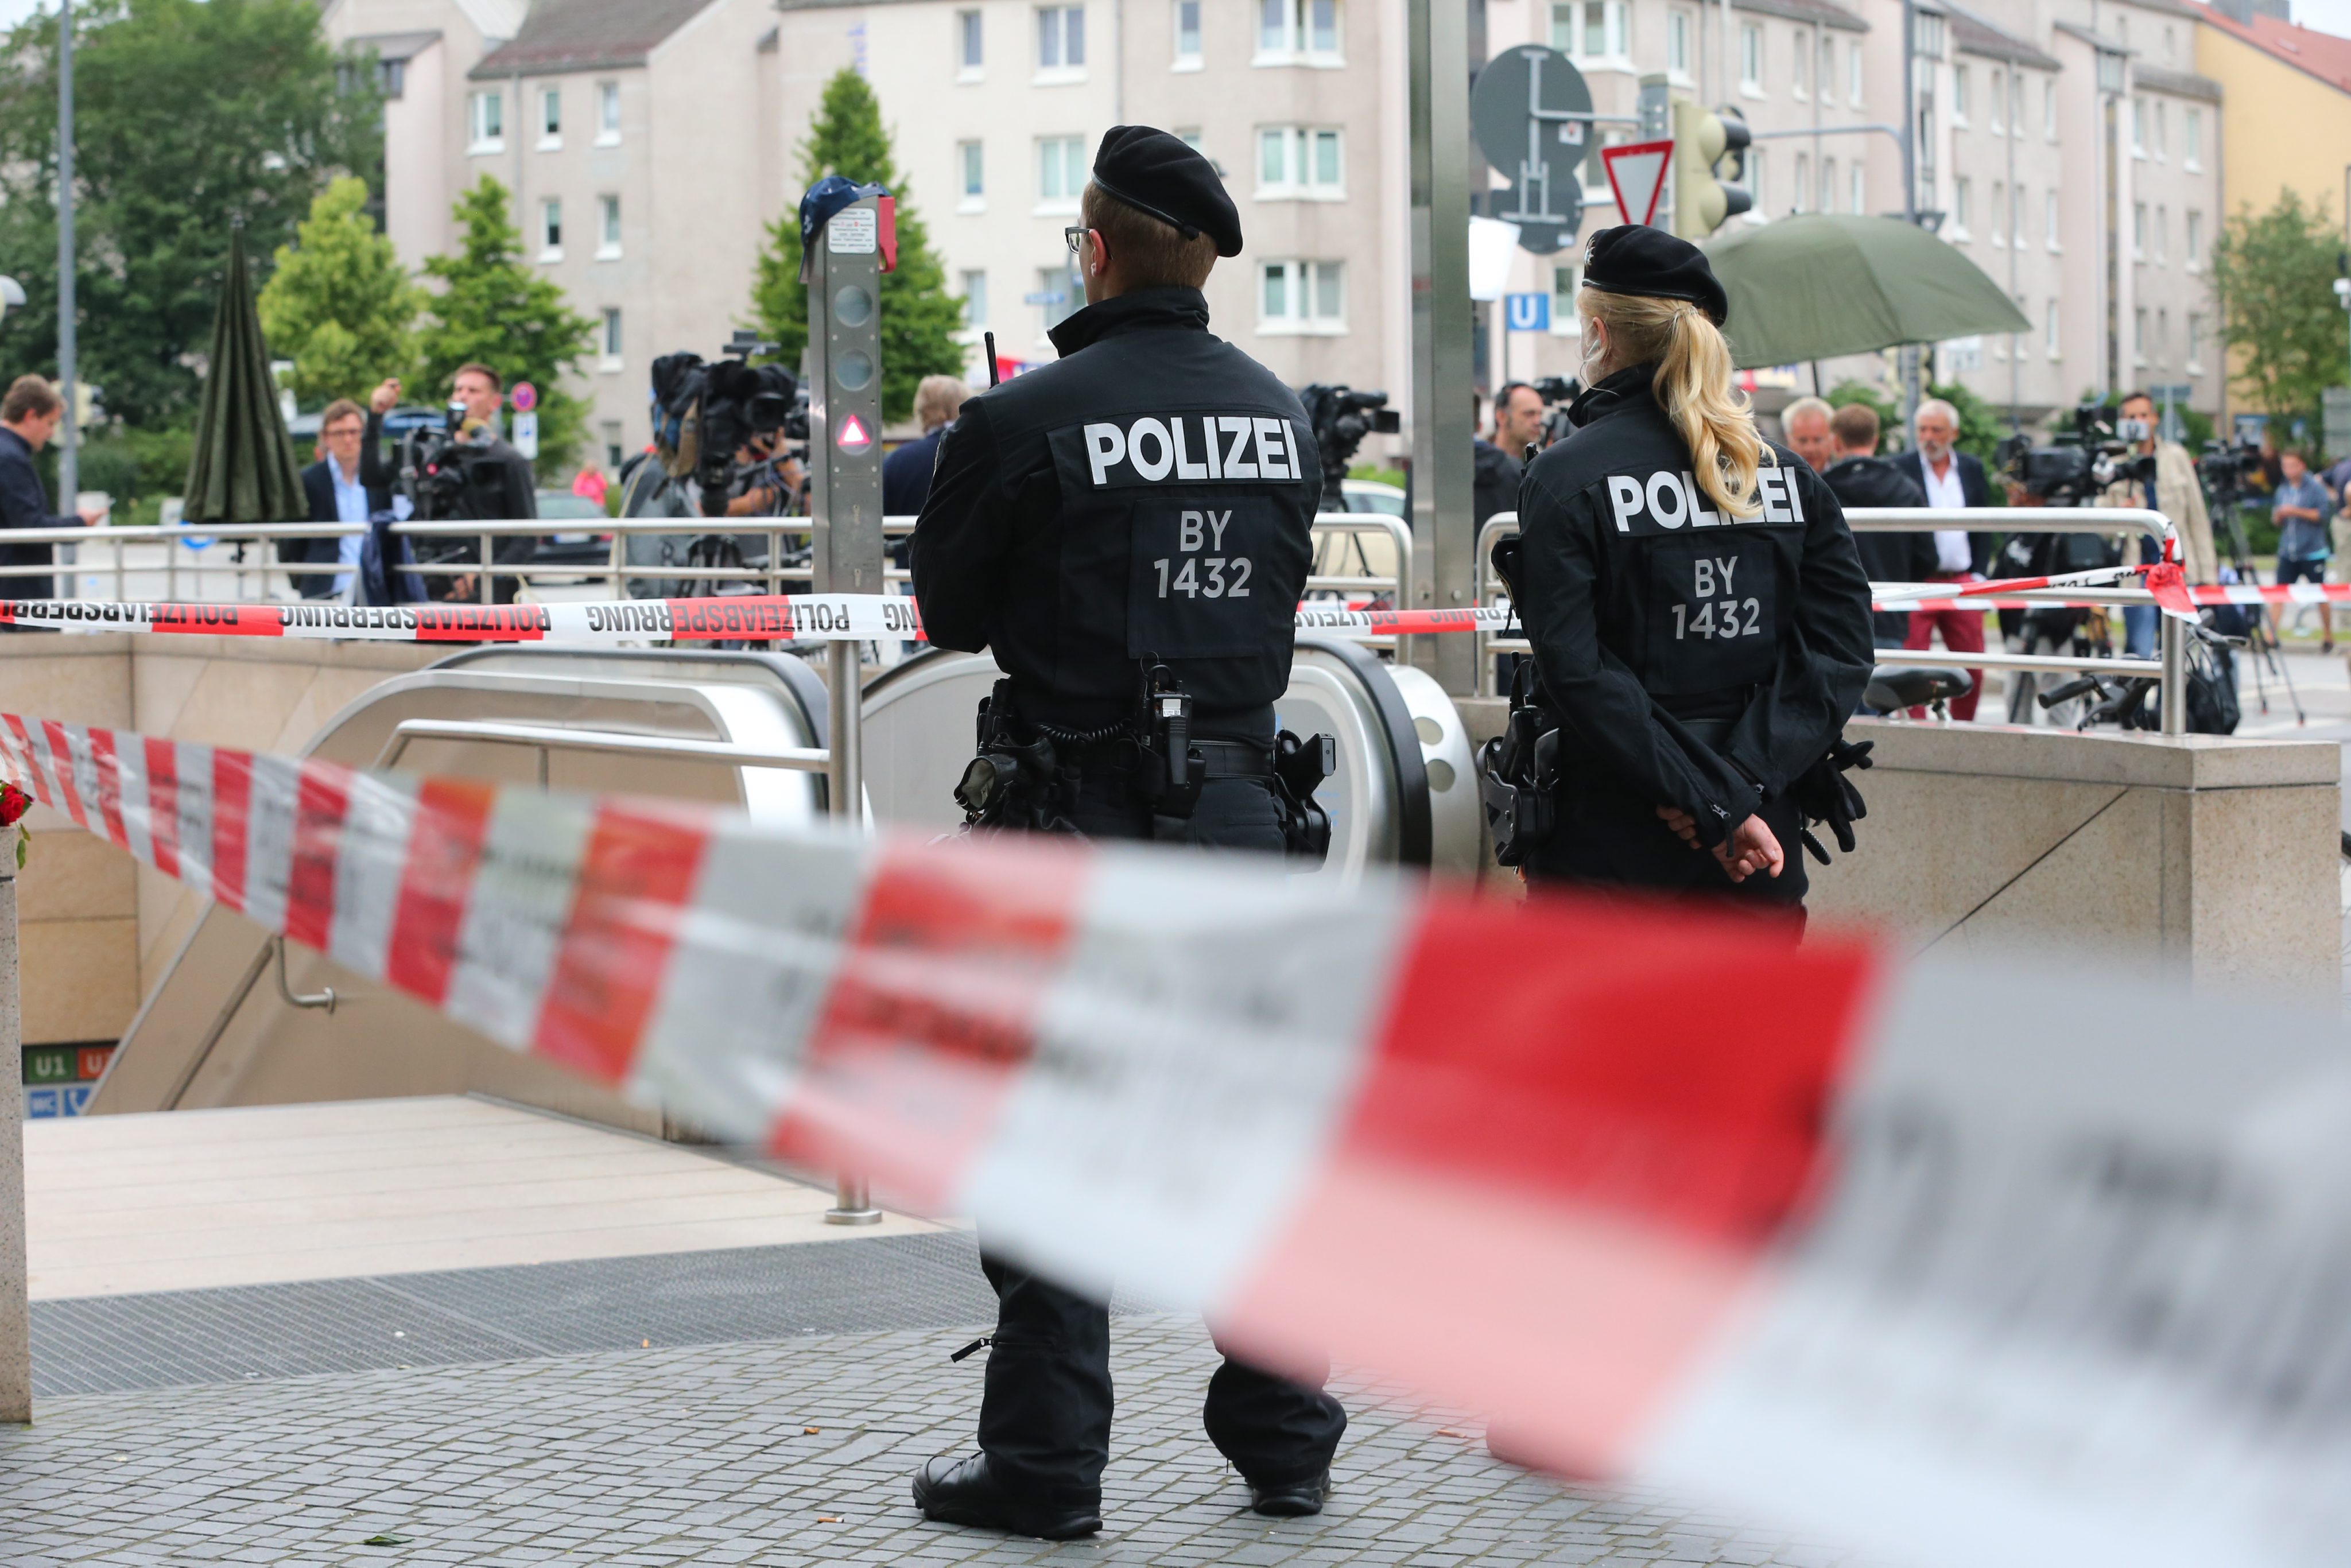 Вечерта на 22 юли в центъра на Мюнхен се разнесоха изстрели. Стрелбата бе насочена срещу хора пред търговския център „Олимпия“. По последни данни са загинали 10 души, включително стрелецът. Ранените са 16. Целият градски транспорт беше спрян. Градът беше блокиран от над 2000 полицаи.